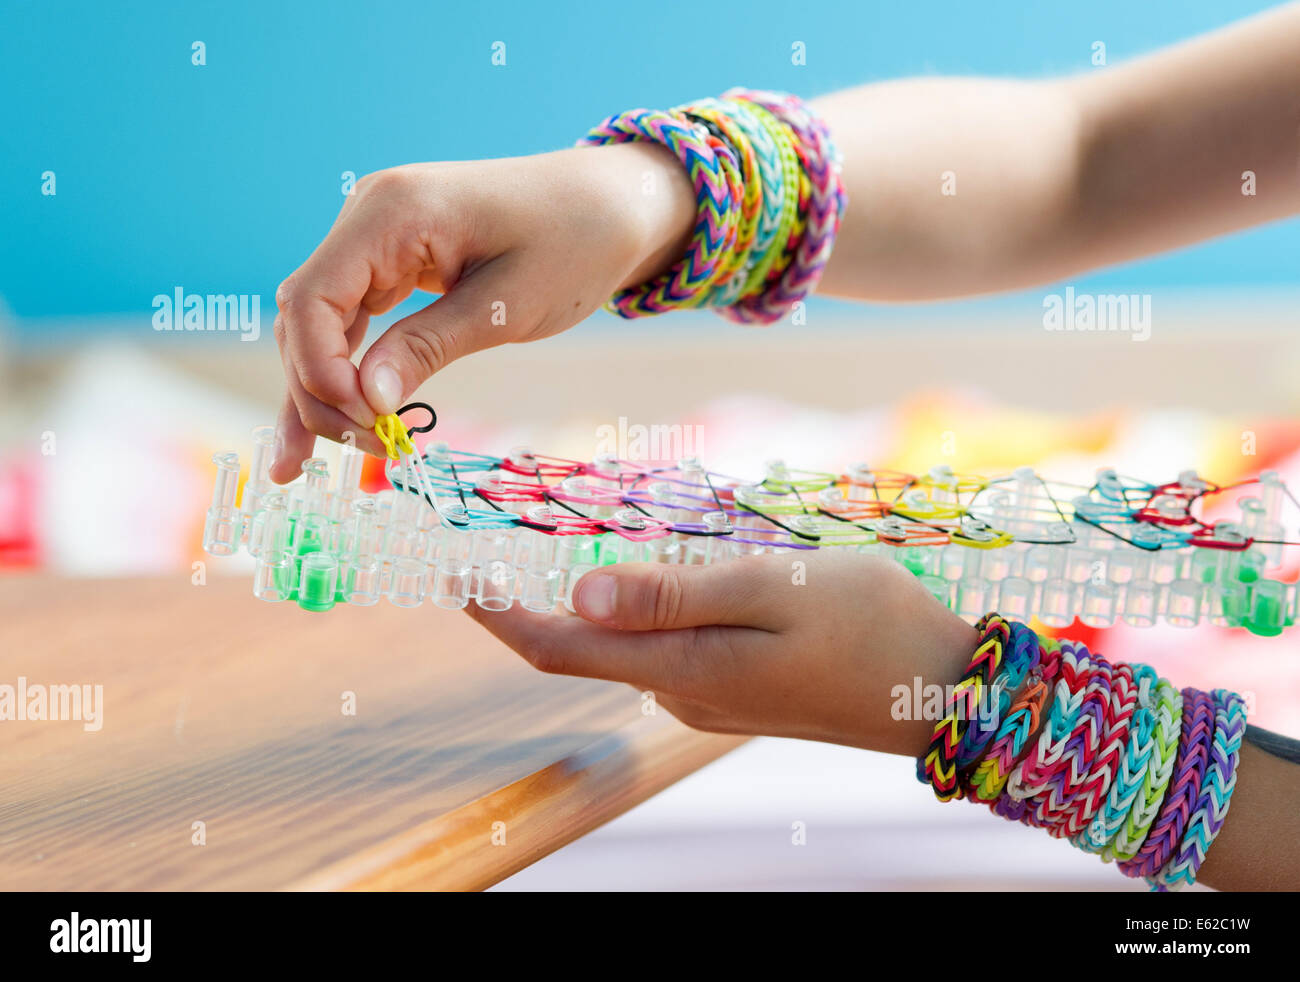 Bracelet Rubber Bands and Elastic Bands To Weave Bracelets Stock Image -  Image of bracelets, colorful: 52059145